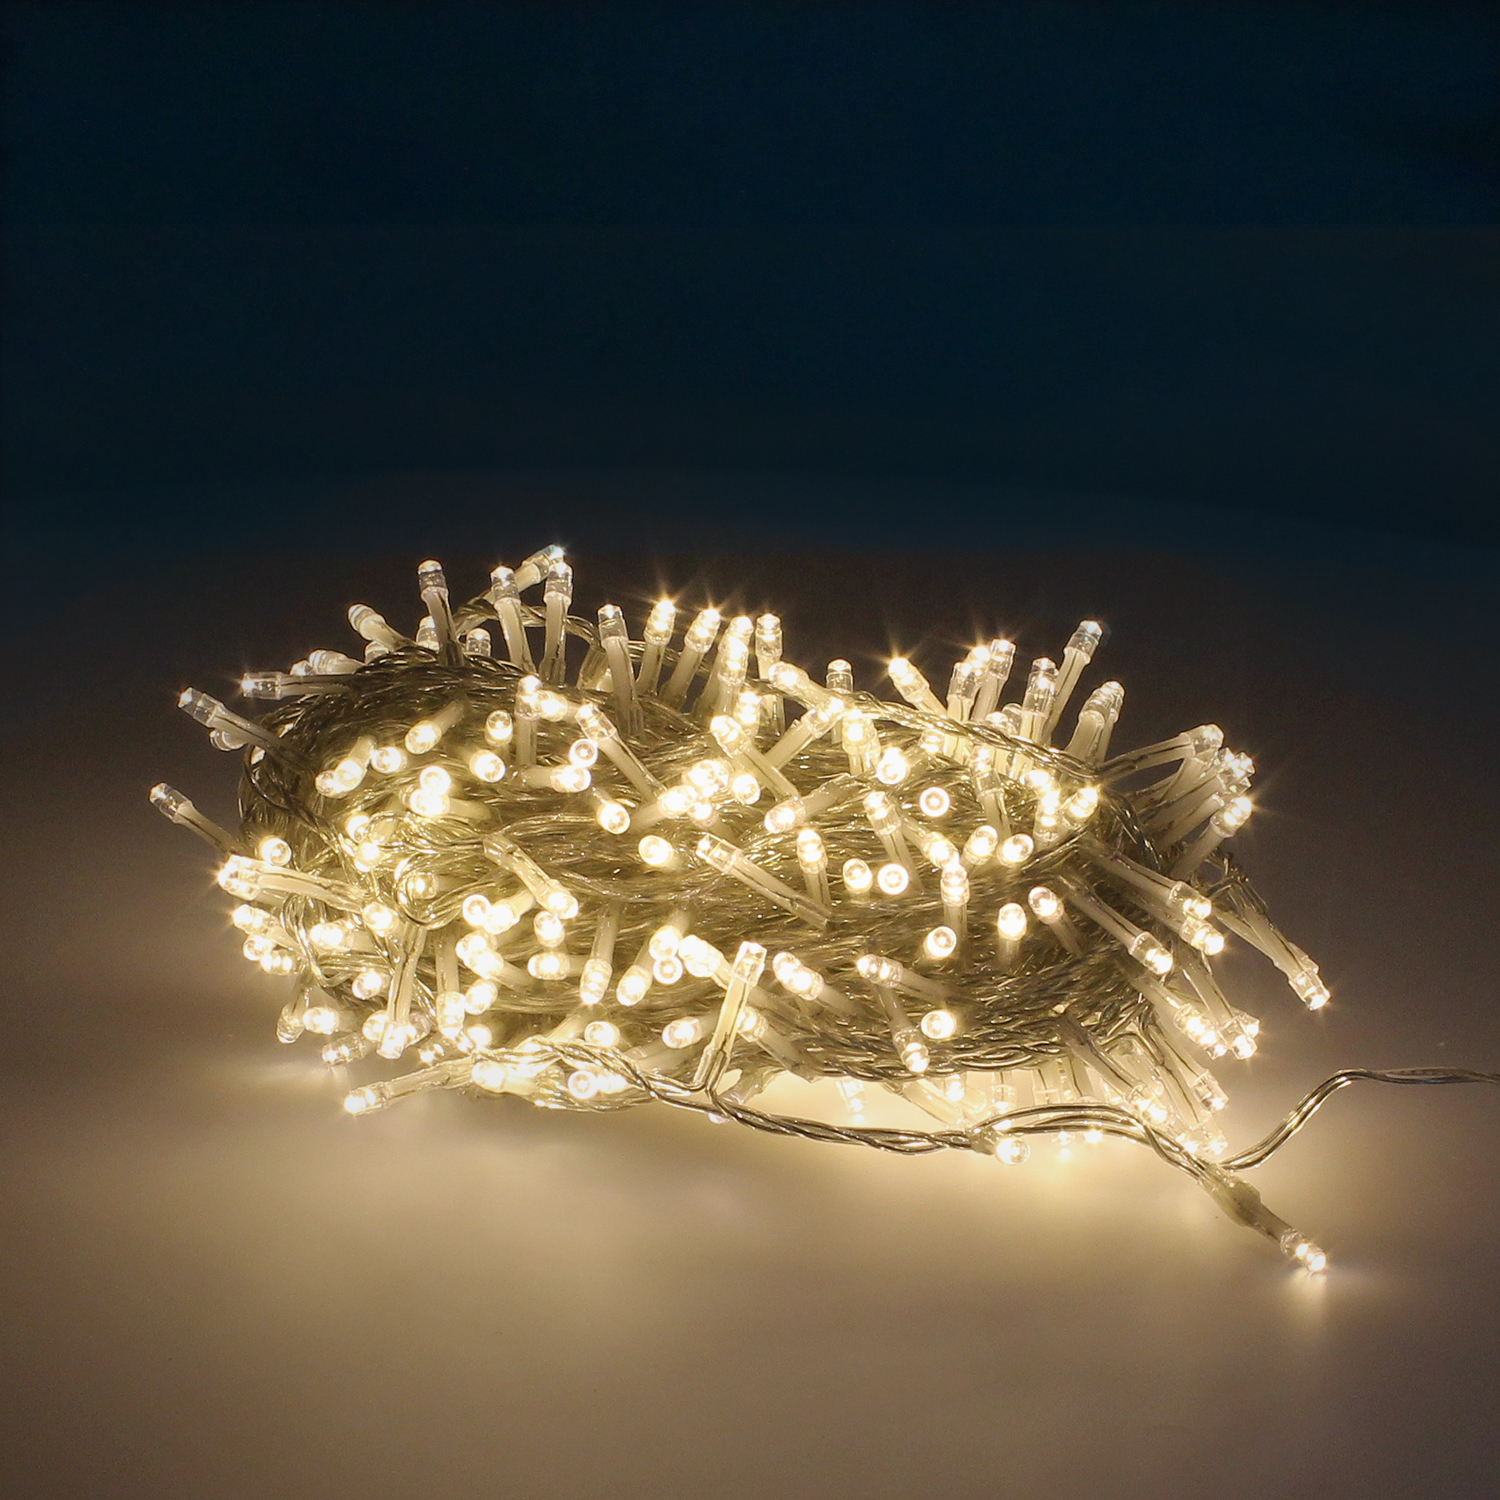 Guinalda Luces Navidad 300 Leds Color Blanco Calido. Luz Navidad Interiores y Exteriores Ip44. Cable